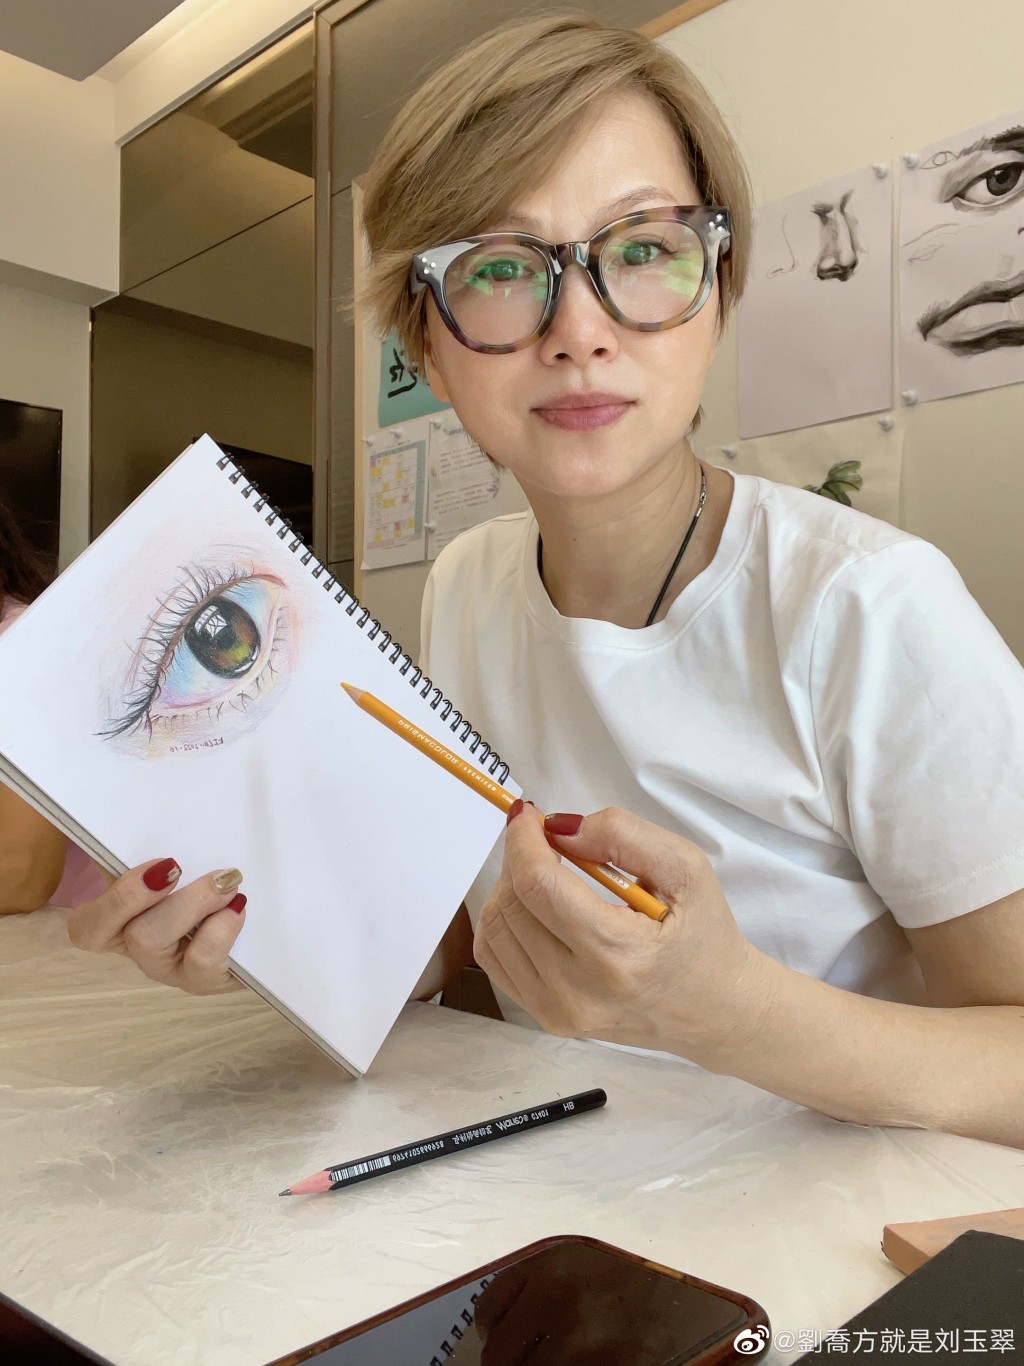 刘玉翠近年爱上绘画，不时在社交网分享画作，画功亦相当不错。